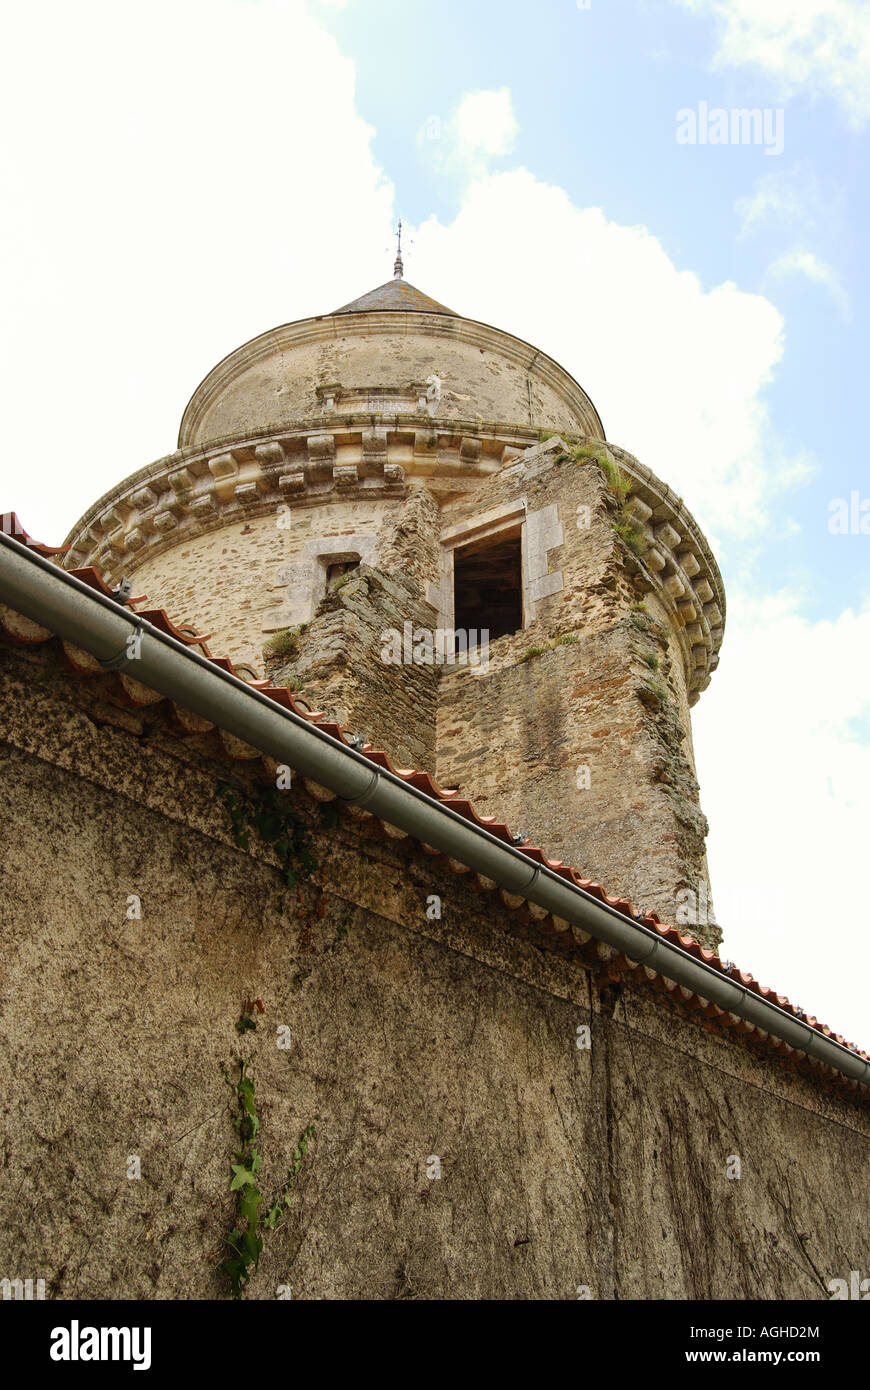 La tour de pierre du château d'Apremont, Vendée, france nombre 2537 Banque D'Images